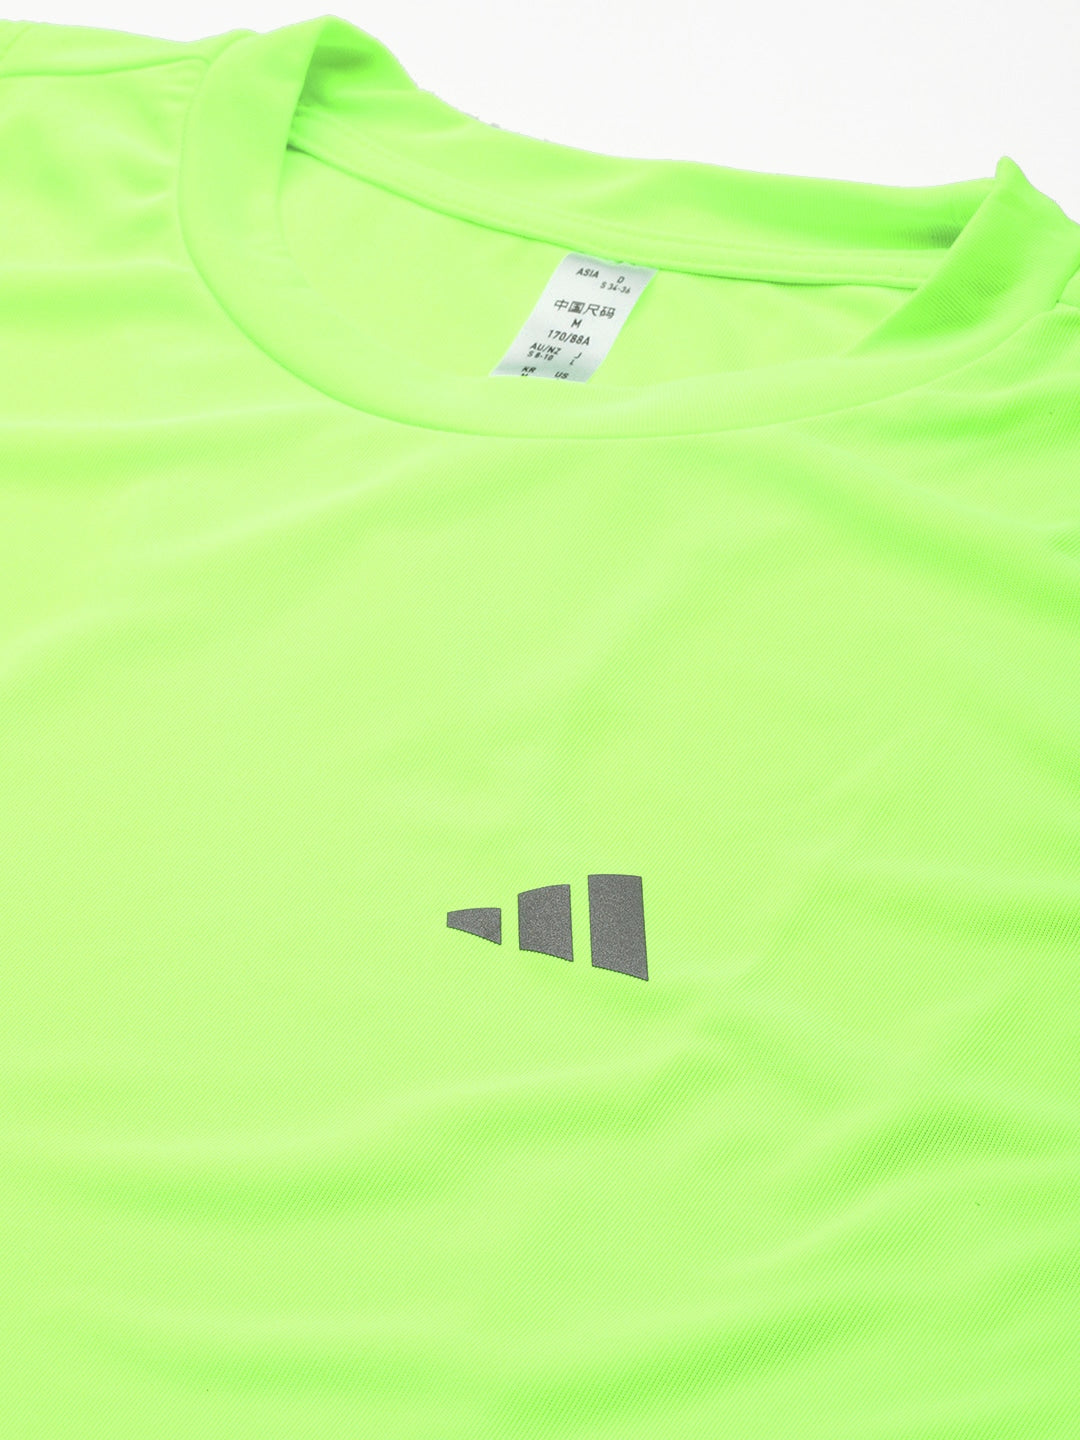 Adidas Women Reflective Detail Run It Tank T-shirt - Distacart